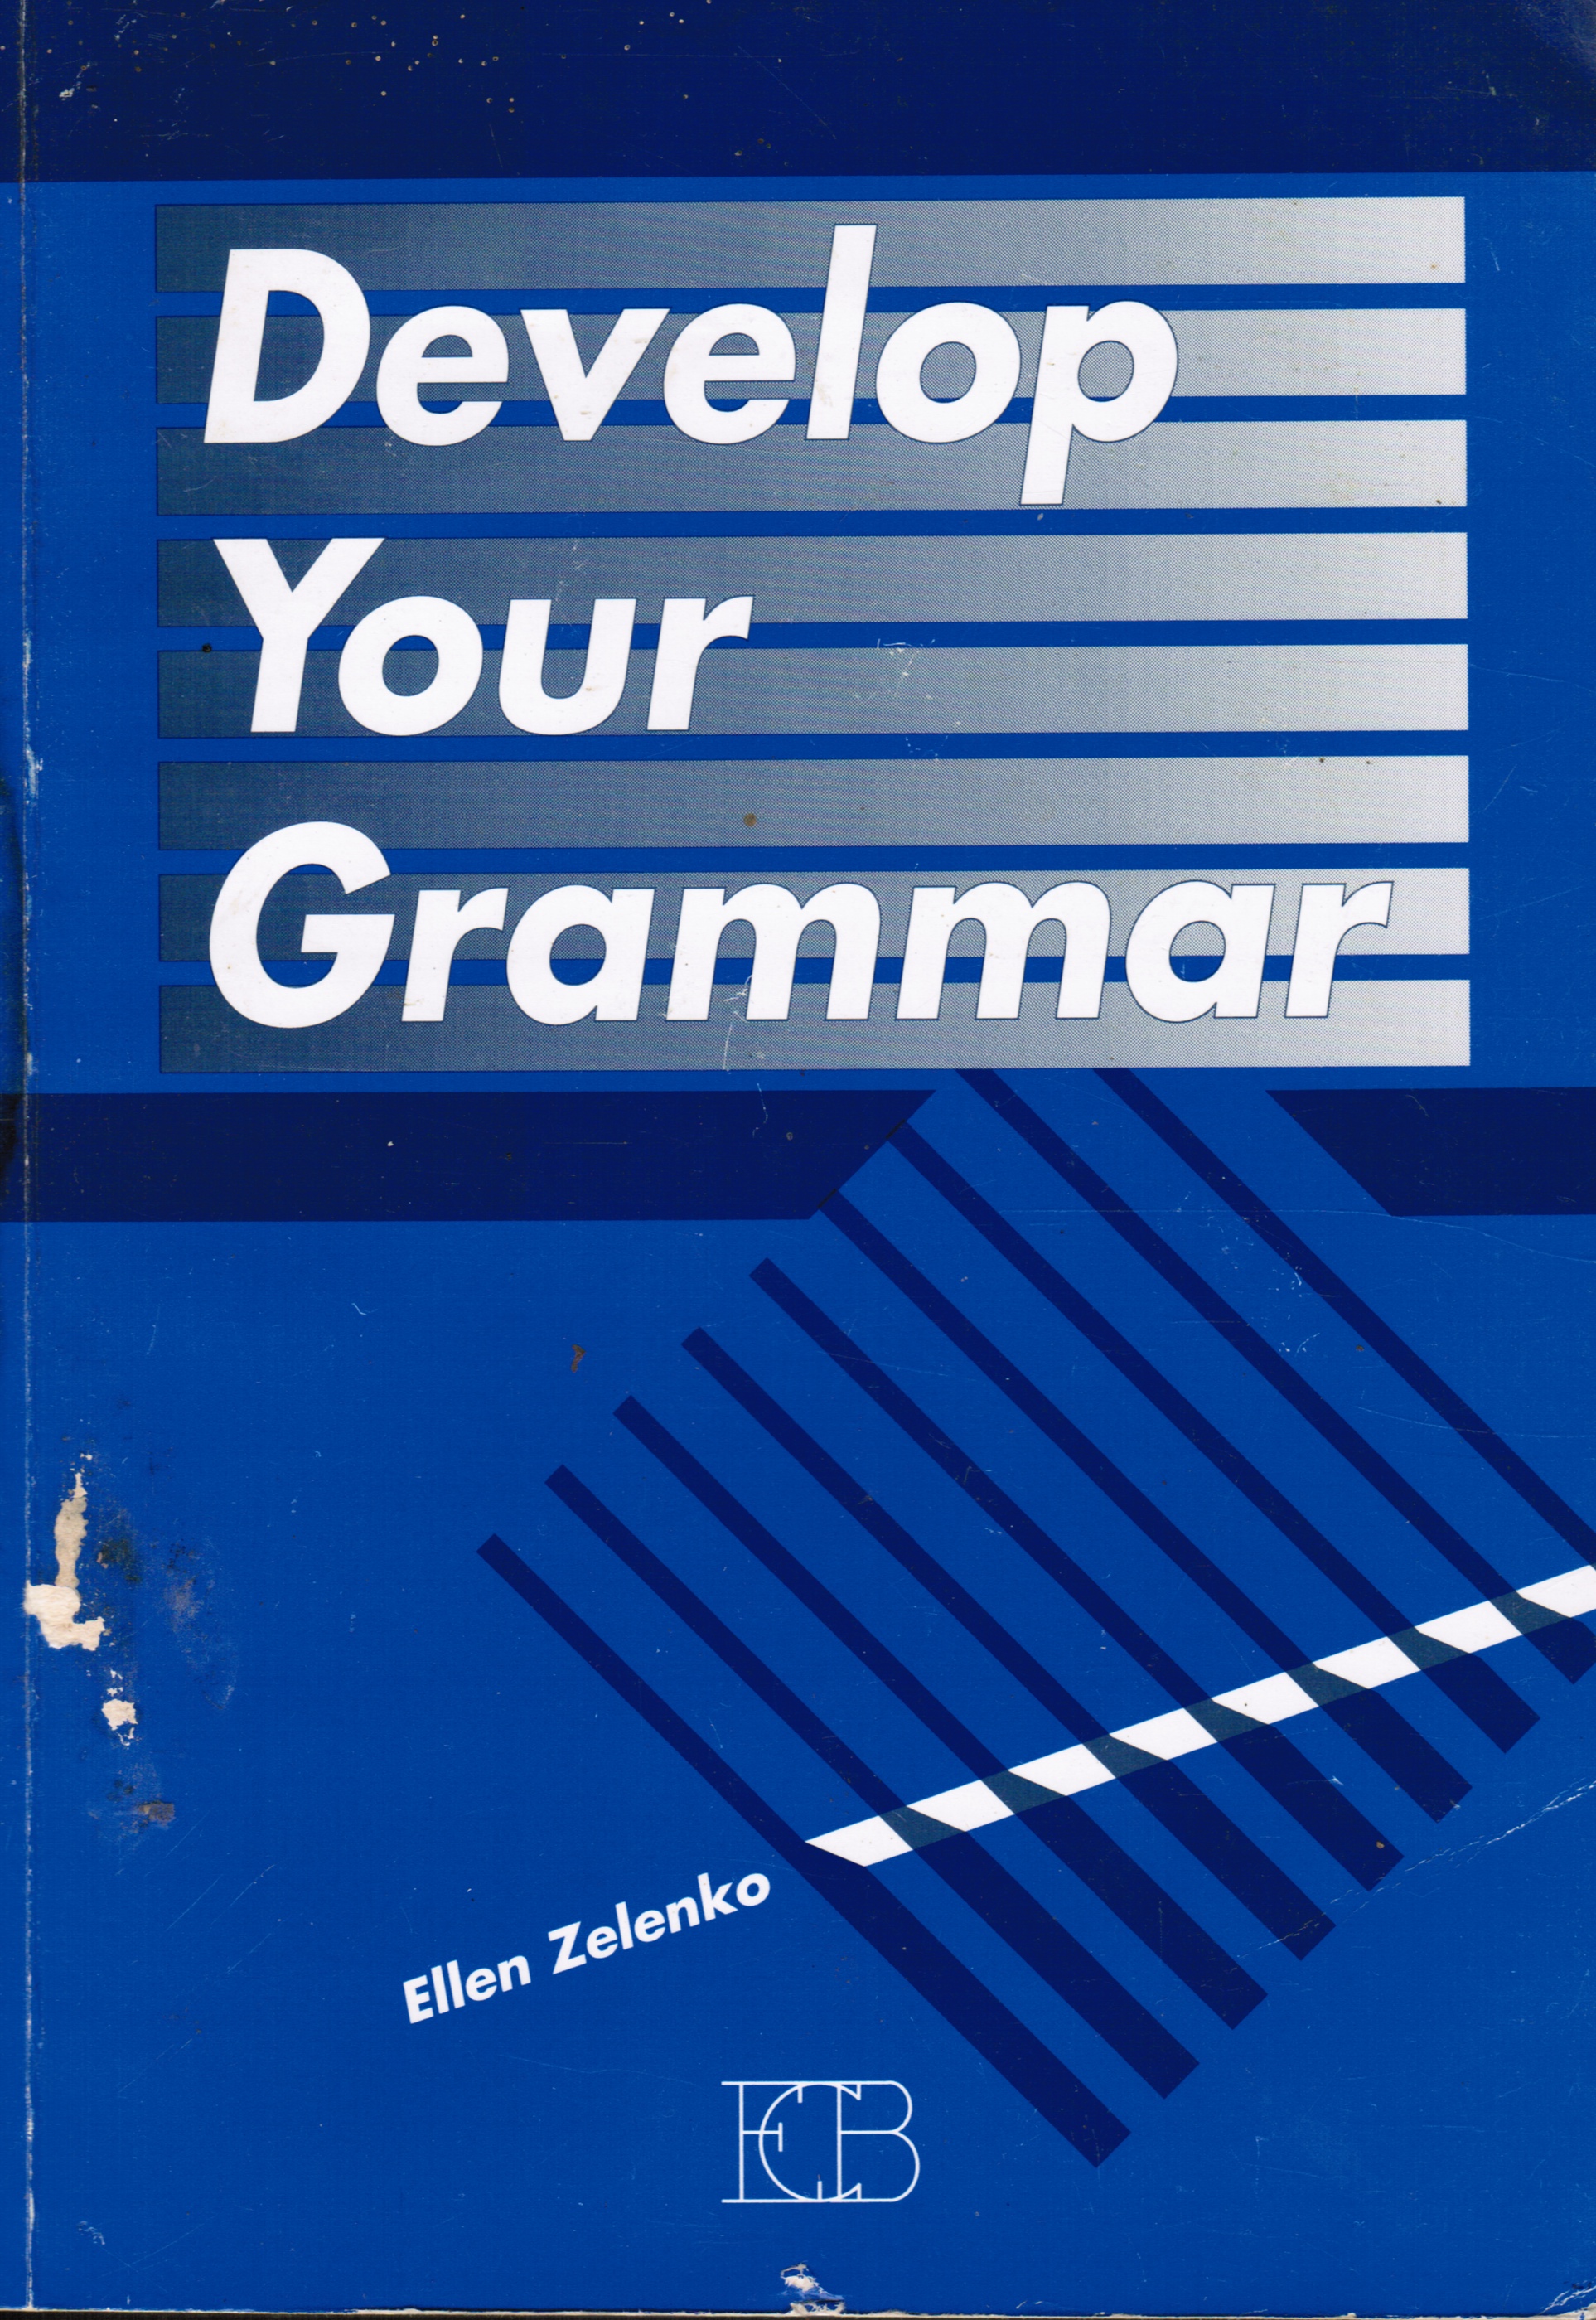 ZELENKO, ELLEN - Develop Your Grammar